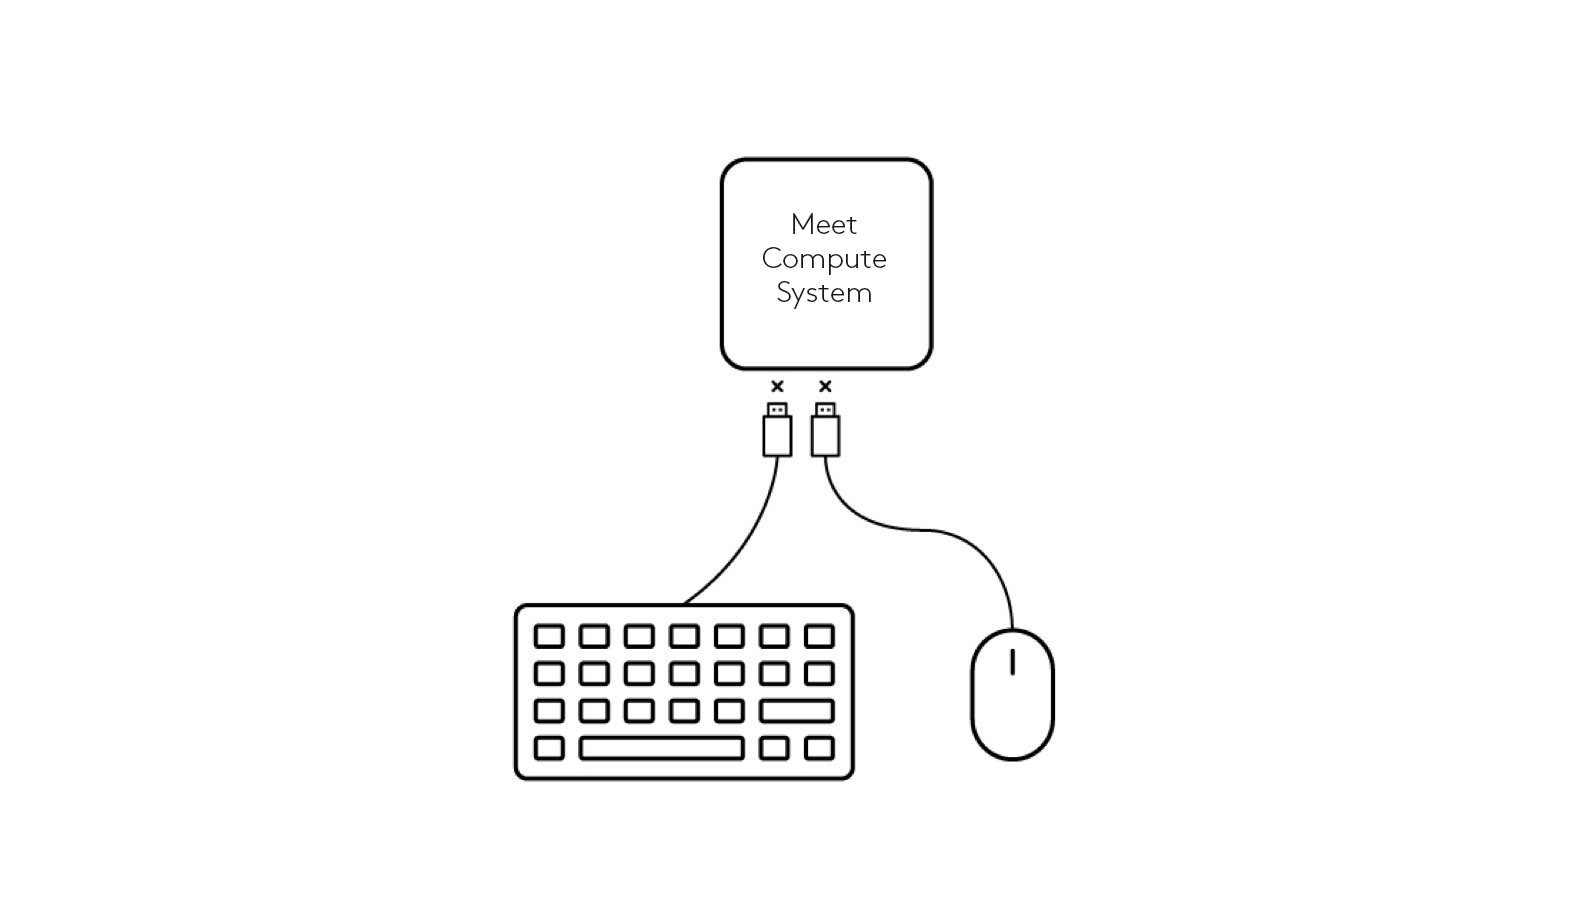 Diagrama de desconexión de teclado y mouse de Meet Compute System